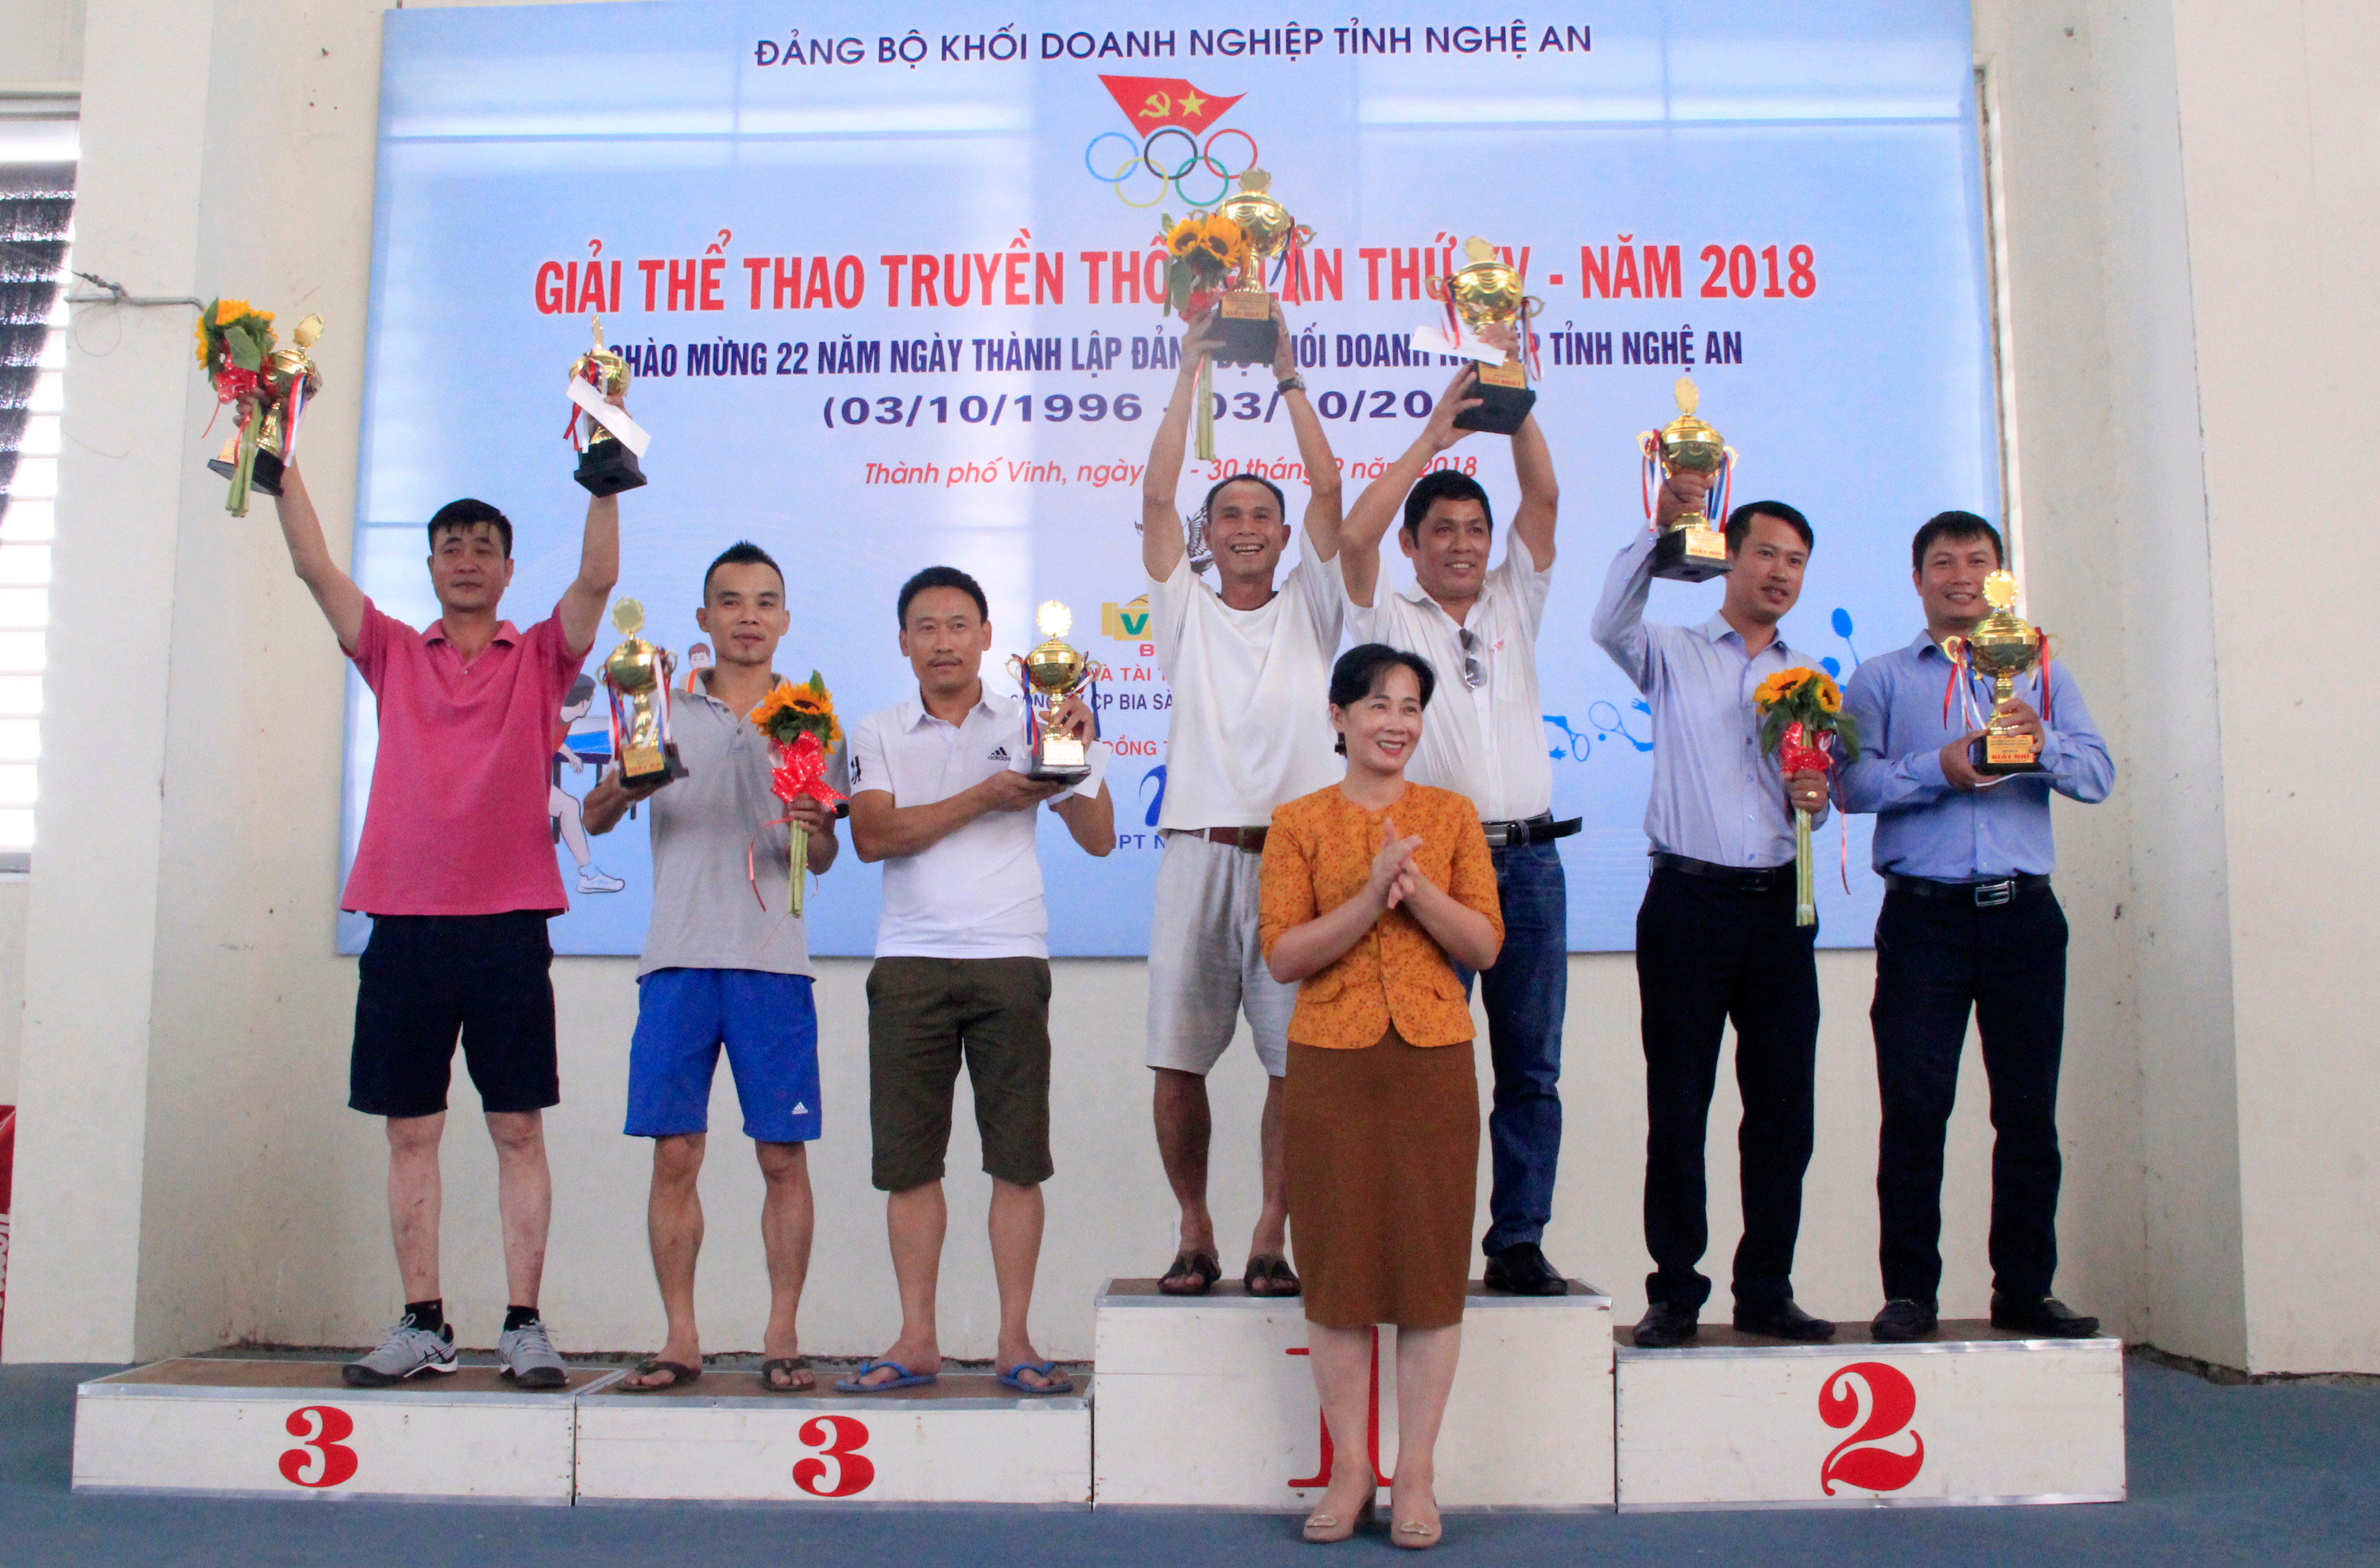 Đồng chí Phan Thị Hoan - Phó Bí thư Thường trực trao giải nội dung đôi nam lãnh đạo trên 40 tuổi. Ảnh: 